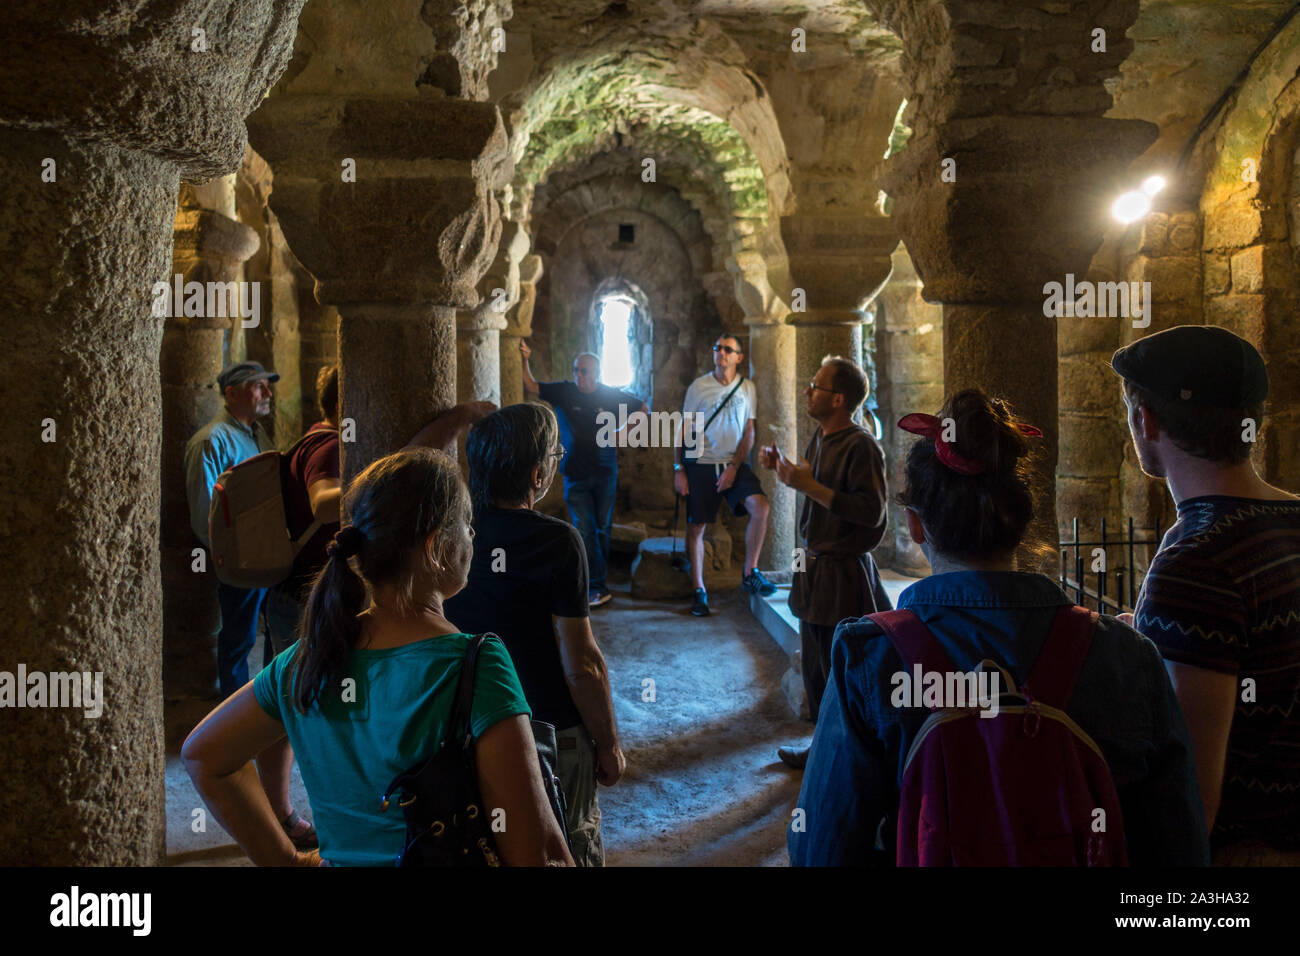 Les touristes visitant la crypte romane du xiie siècle sous la chapelle St Vincent au Château de Tiffauges, château médiéval, Vendée, France Banque D'Images